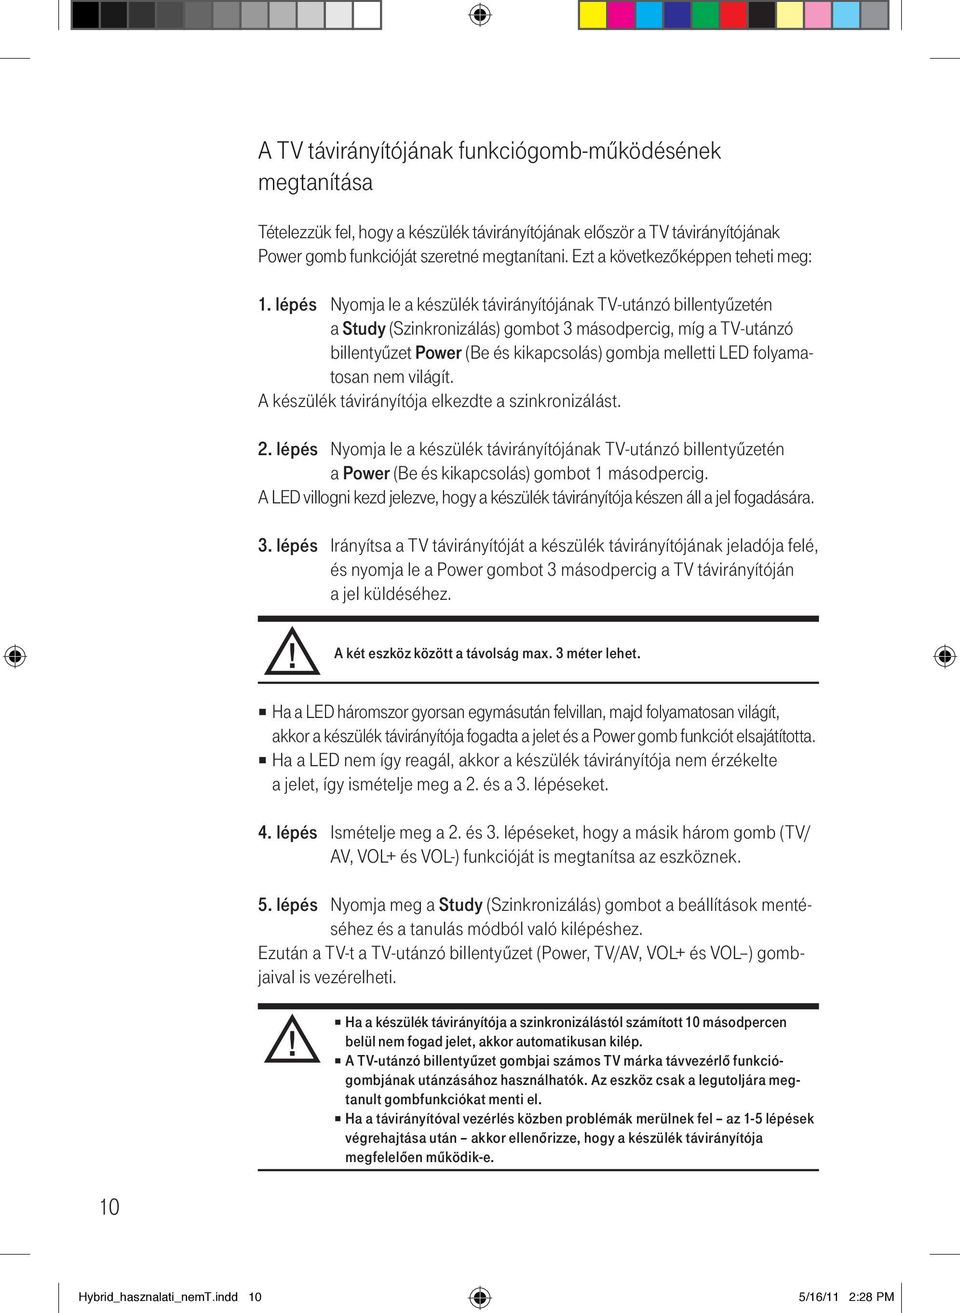 EC2218SS / EC2208S. digitális beltéri vevőegység kezelési útmutató - PDF  Ingyenes letöltés